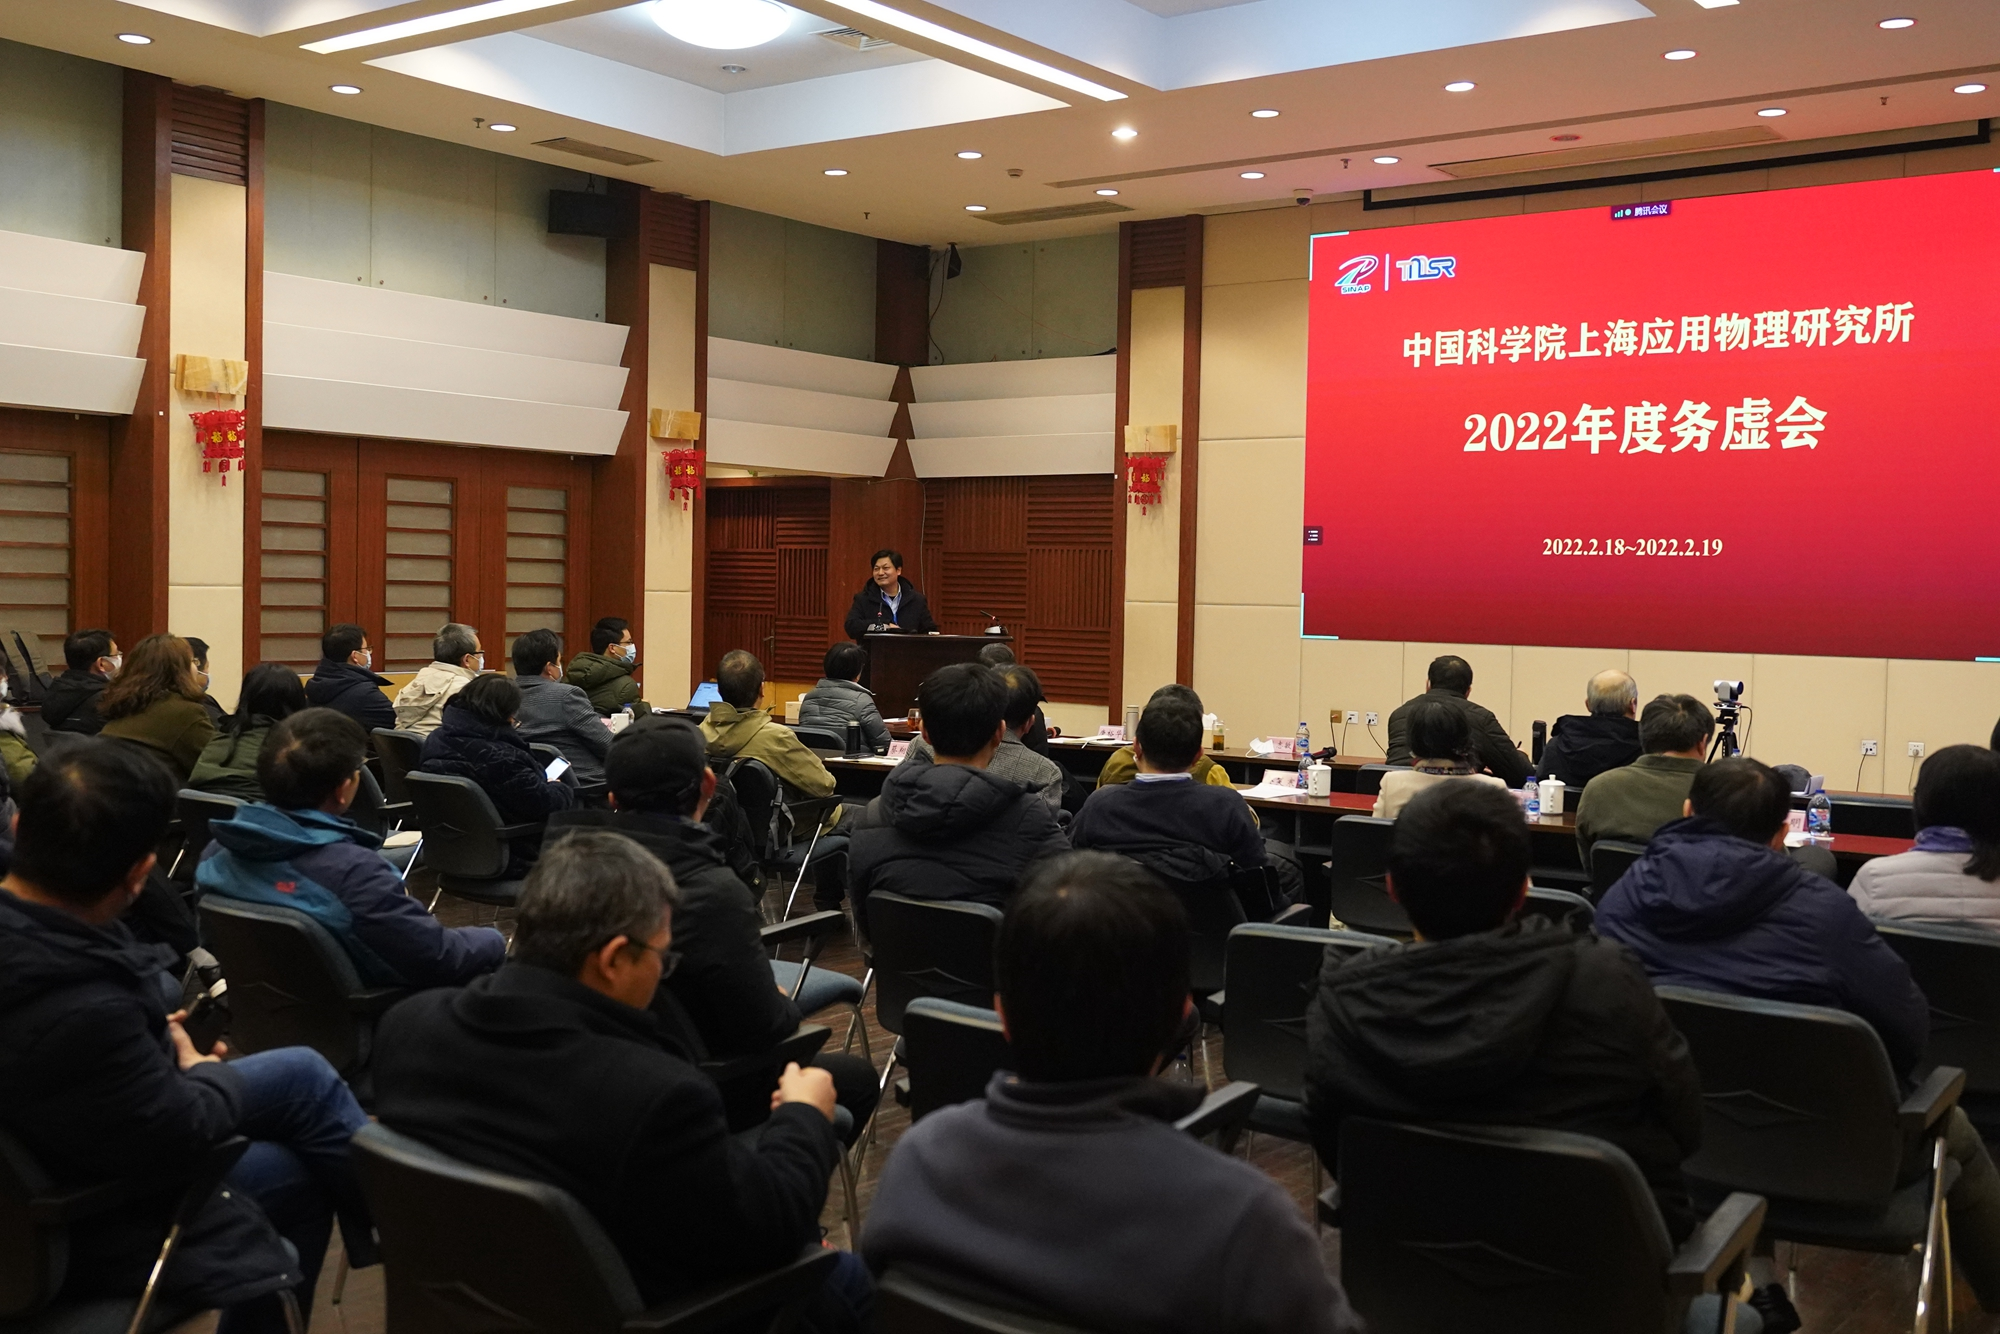 上海应物所召开2022年度深化改革研讨会